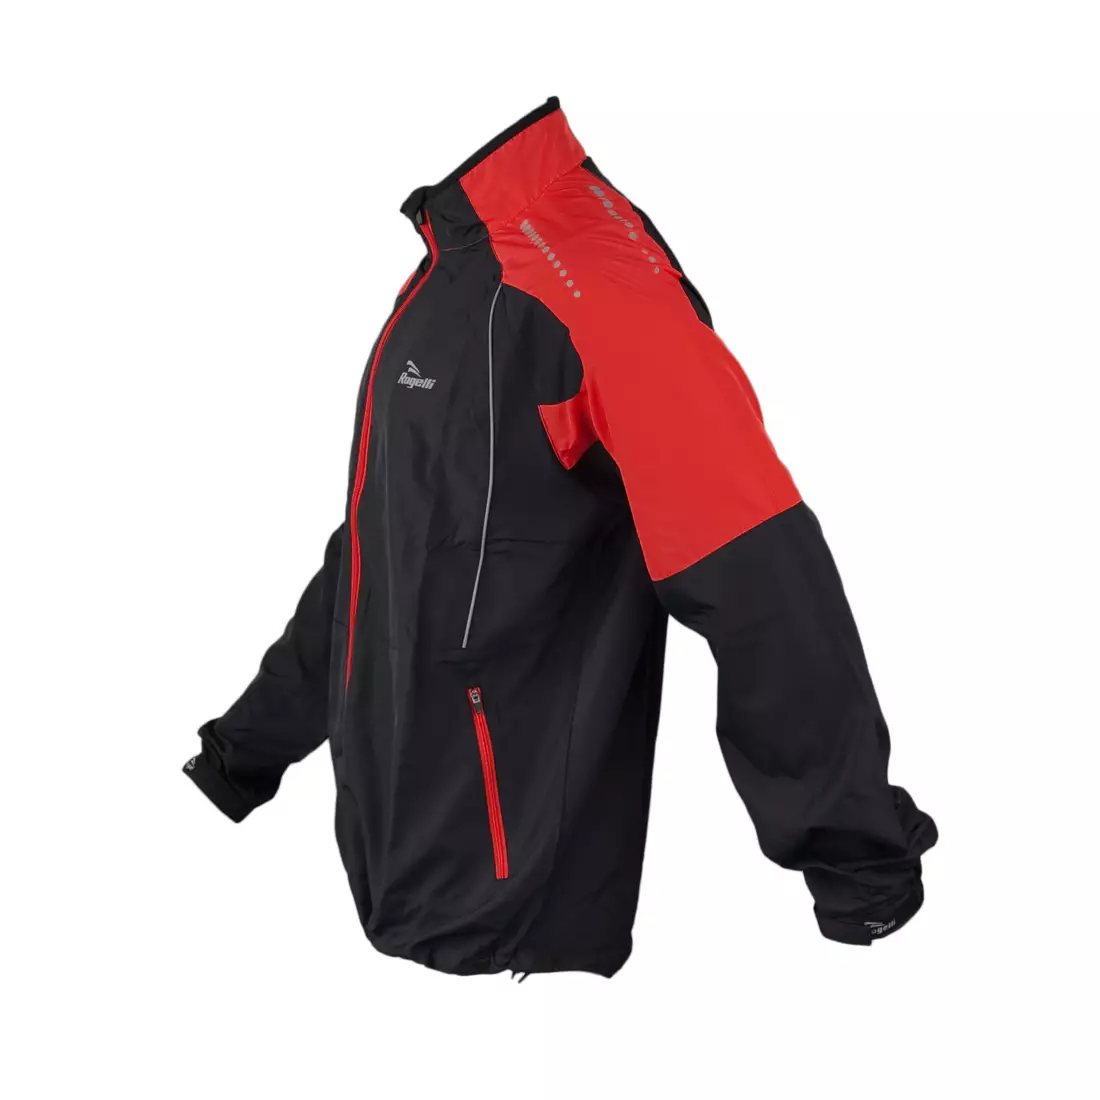 ROGELLI RUN APOLLO - haină de ploaie ultrauşoară pentru bărbaţi